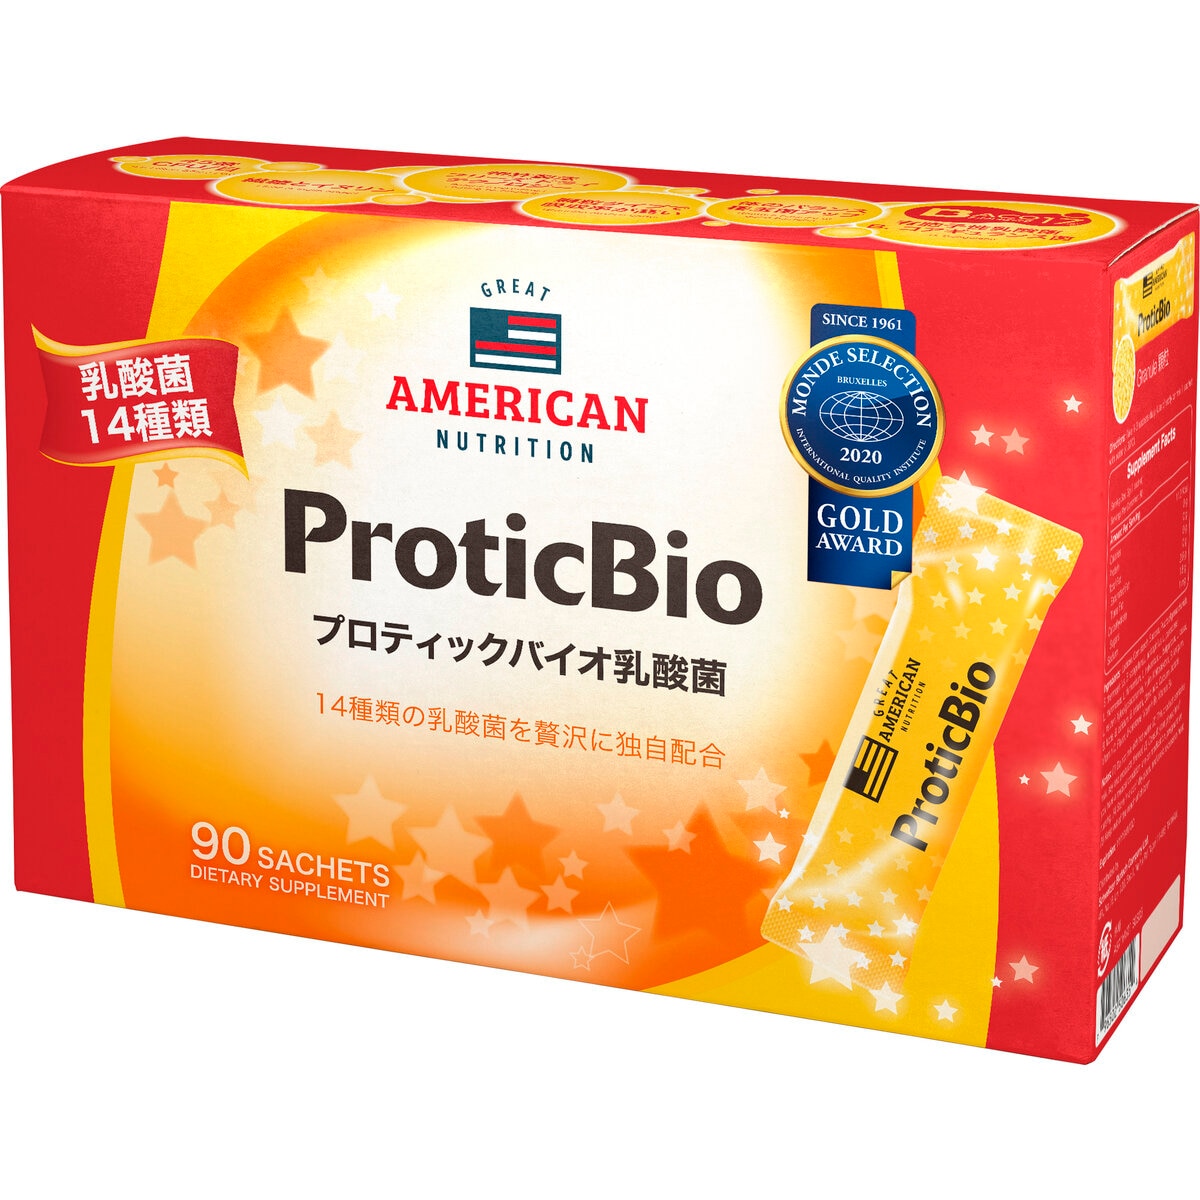 プロティックバイオ乳酸菌 3g スティック x 90 包 Costco Japan